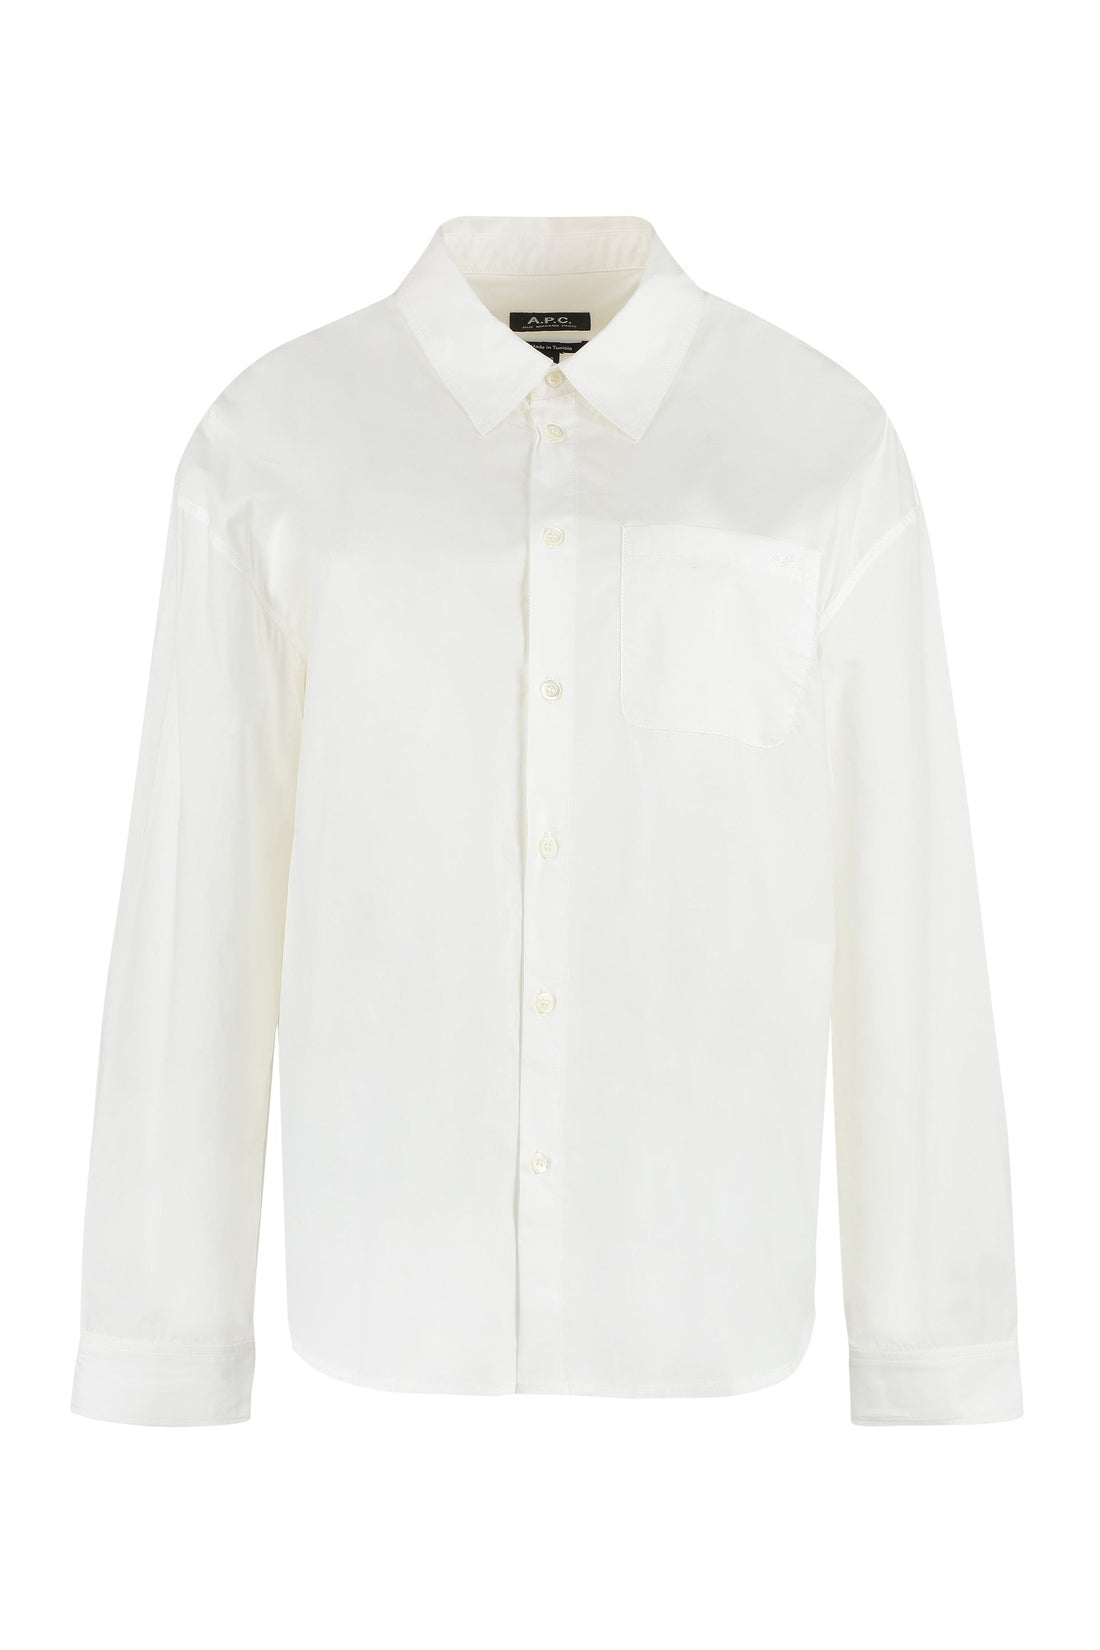 A.P.C.-OUTLET-SALE-Boyfriend cotton shirt-ARCHIVIST